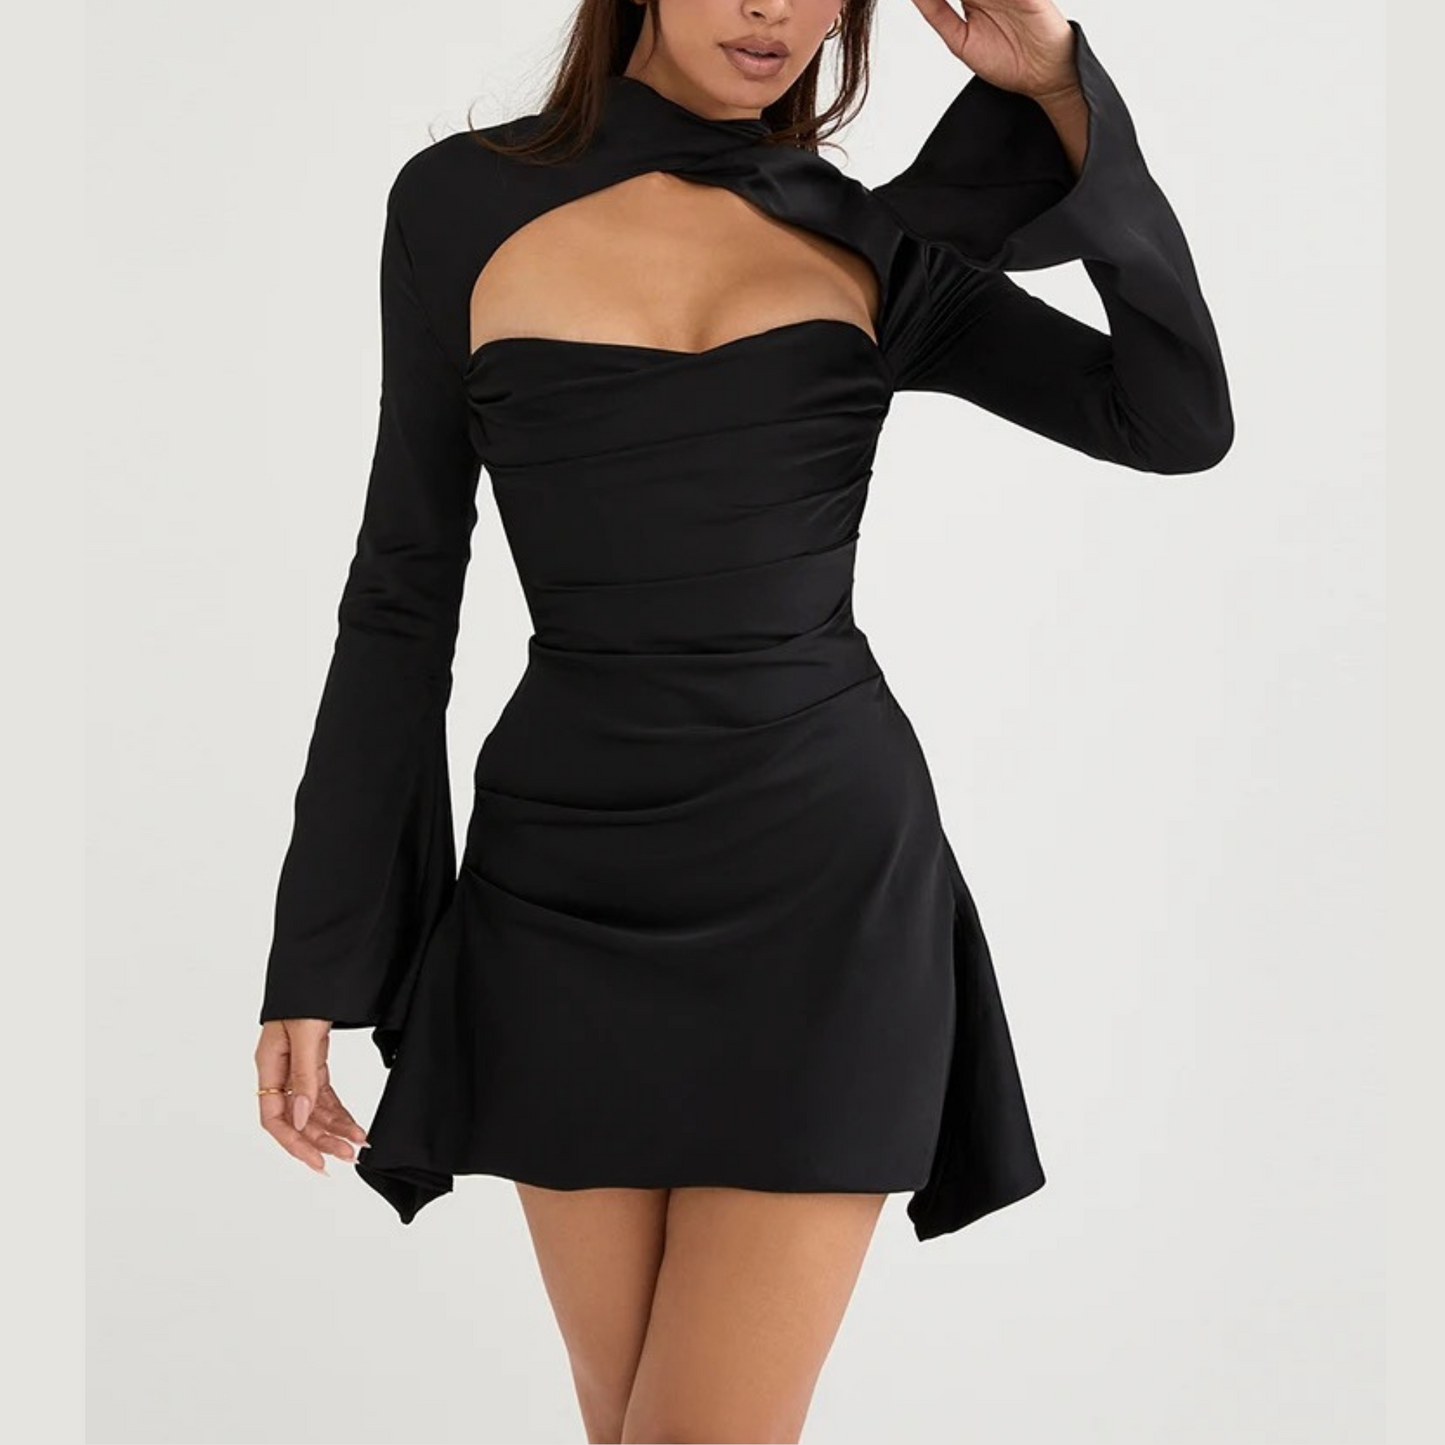 Andrea - Black Draped Satin Mini Dress - Model Mannequin